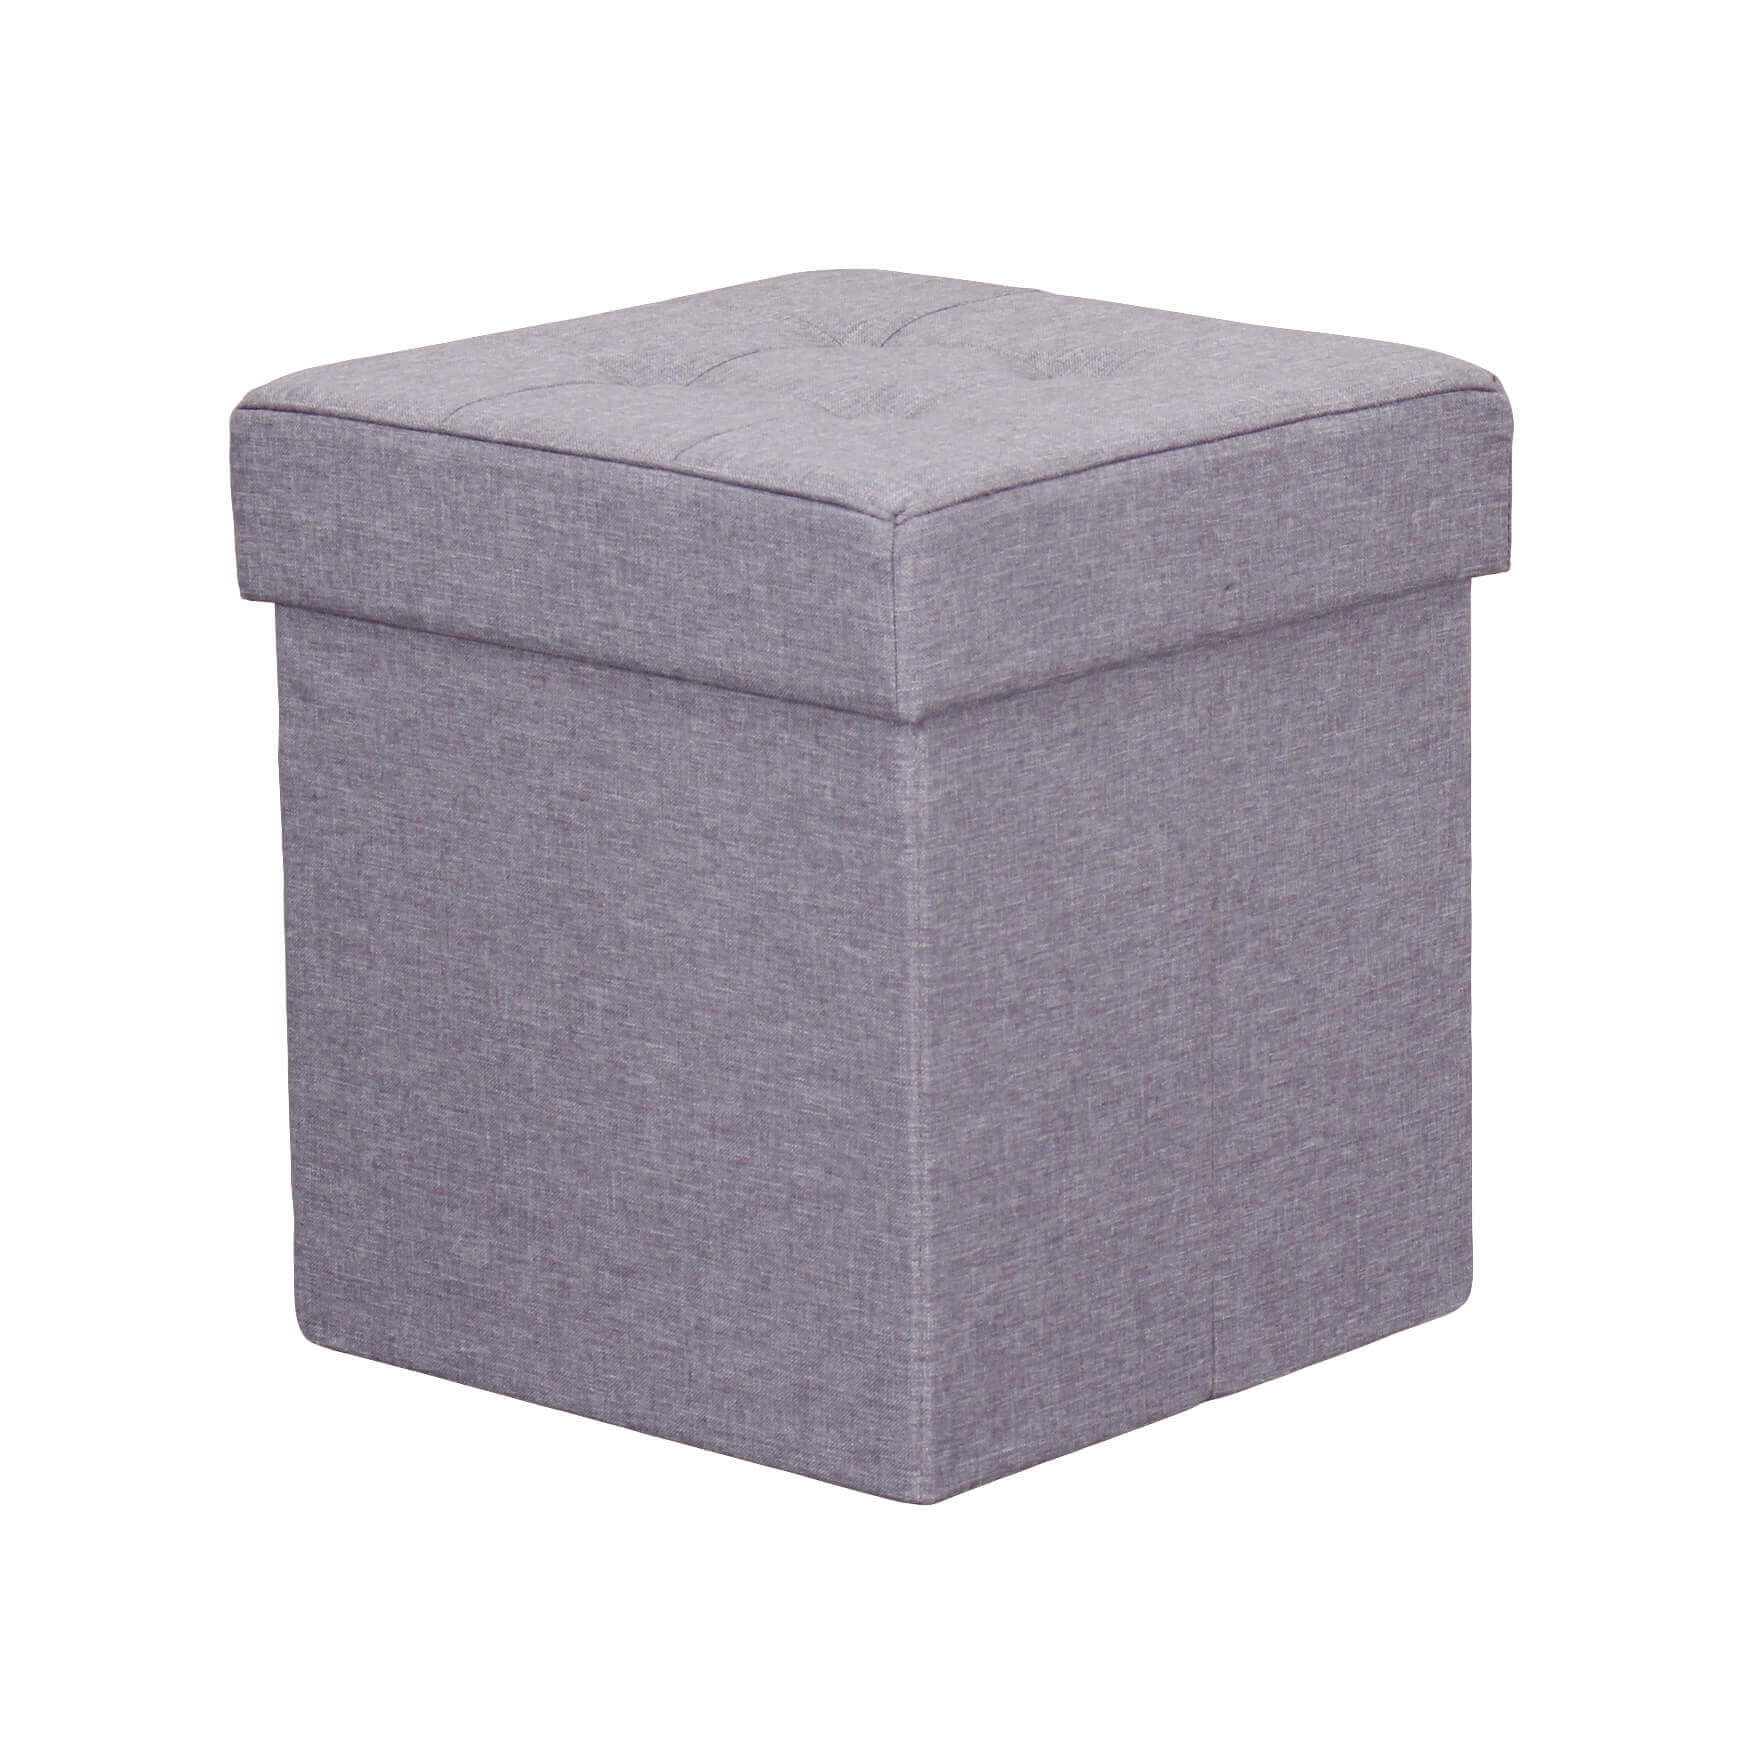 Milani Home pouf quadrato in stoffa di design moderno, cm 38 x 38 x 40 h Grigio chiaro 38 x 38 x 40 cm